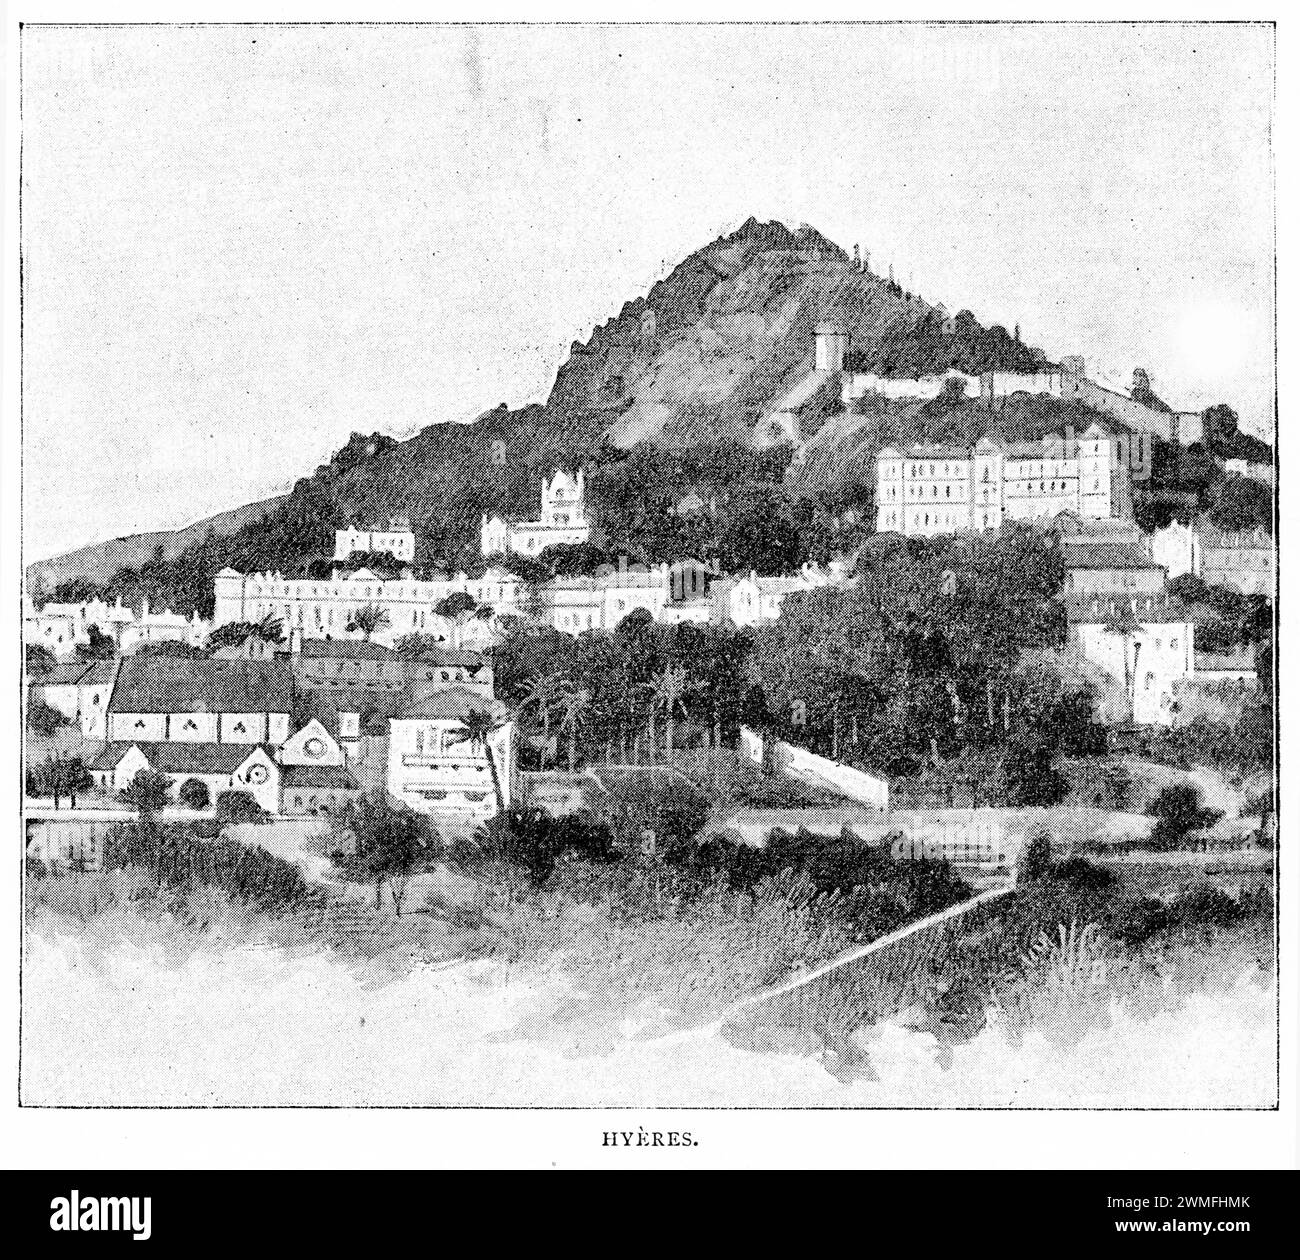 Mezzitoni di Hyeres, intorno al 1900. Hyères è una città francese sulla costa mediterranea. Il centro storico, situato in collina, presenta i resti di un castello medievale e mura secolari. Foto Stock